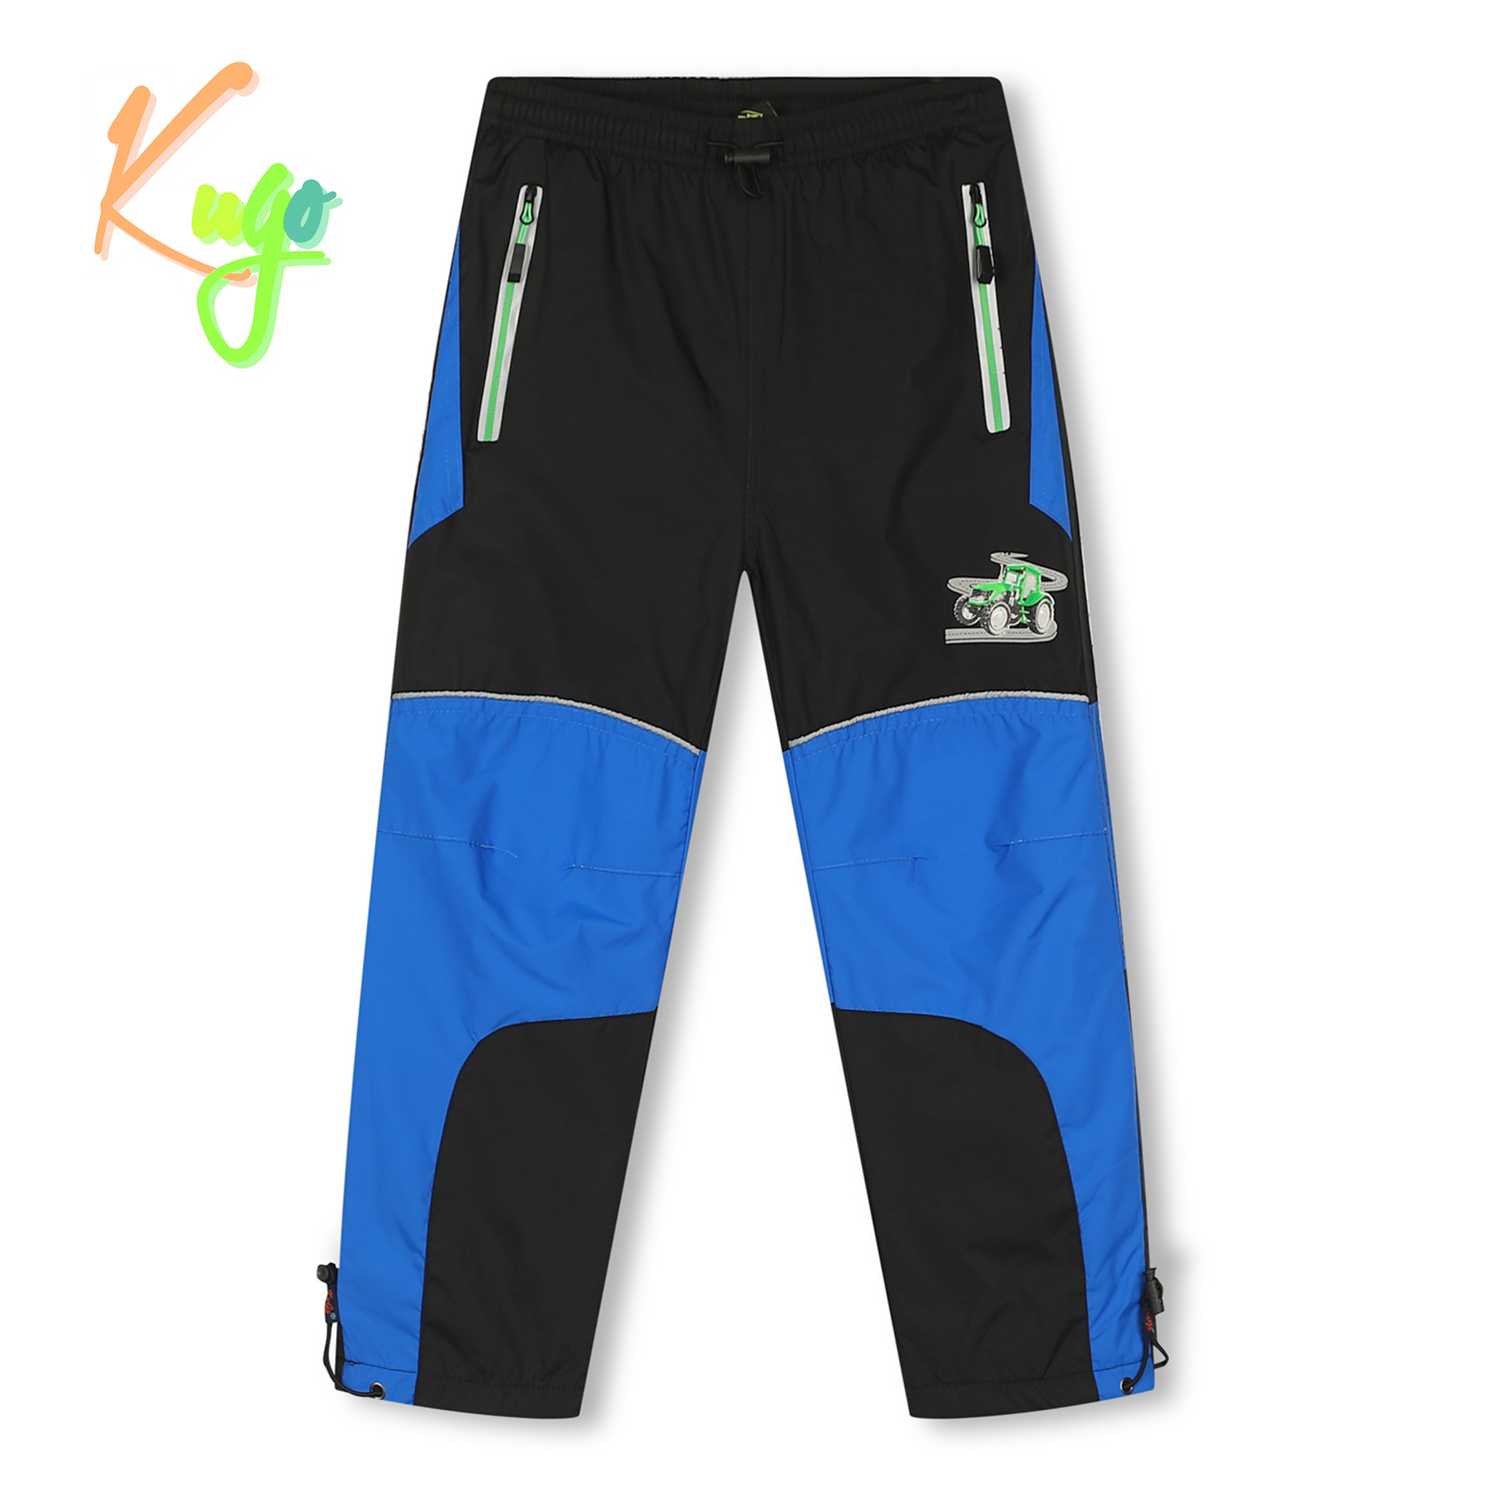 Chlapecké šusťákové kalhoty, zateplené - KUGO DK7126, černá/ zelený zip Barva: Černá, Velikost: 128